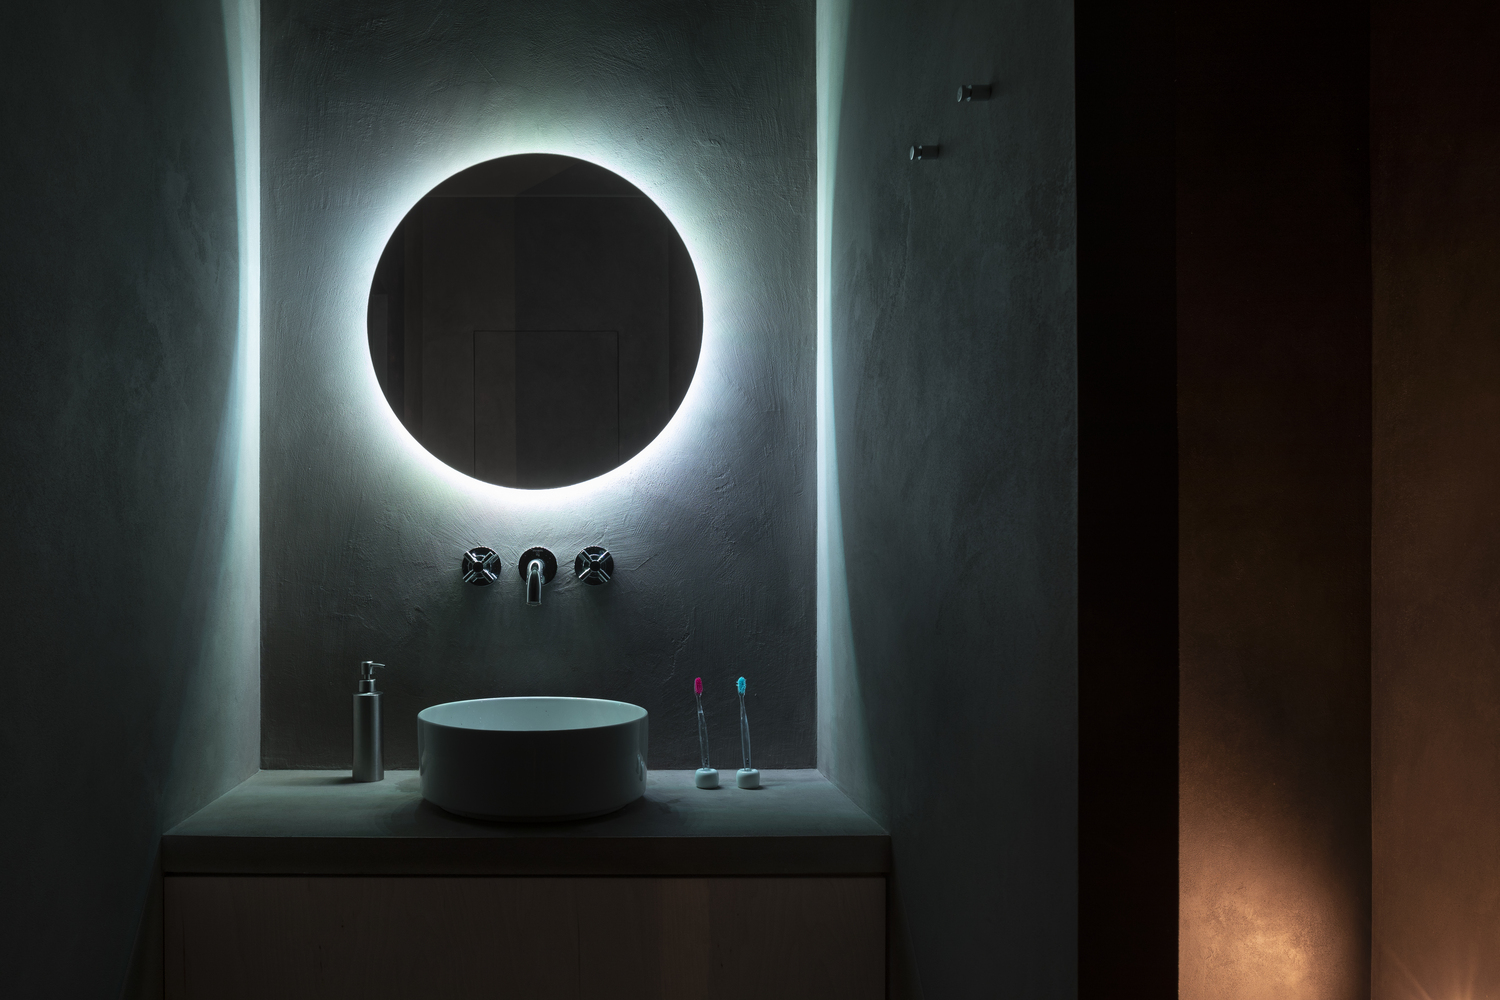 Không chỉ riêng phòng ngủ, cả phòng tắm nhỏ cũng được chủ nhân đầu tư hệ thống đèn chiếu sáng xung quanh tấm gương tròn cho cảm giác lôi cuốn đầy mạnh mẽ và nam tính.